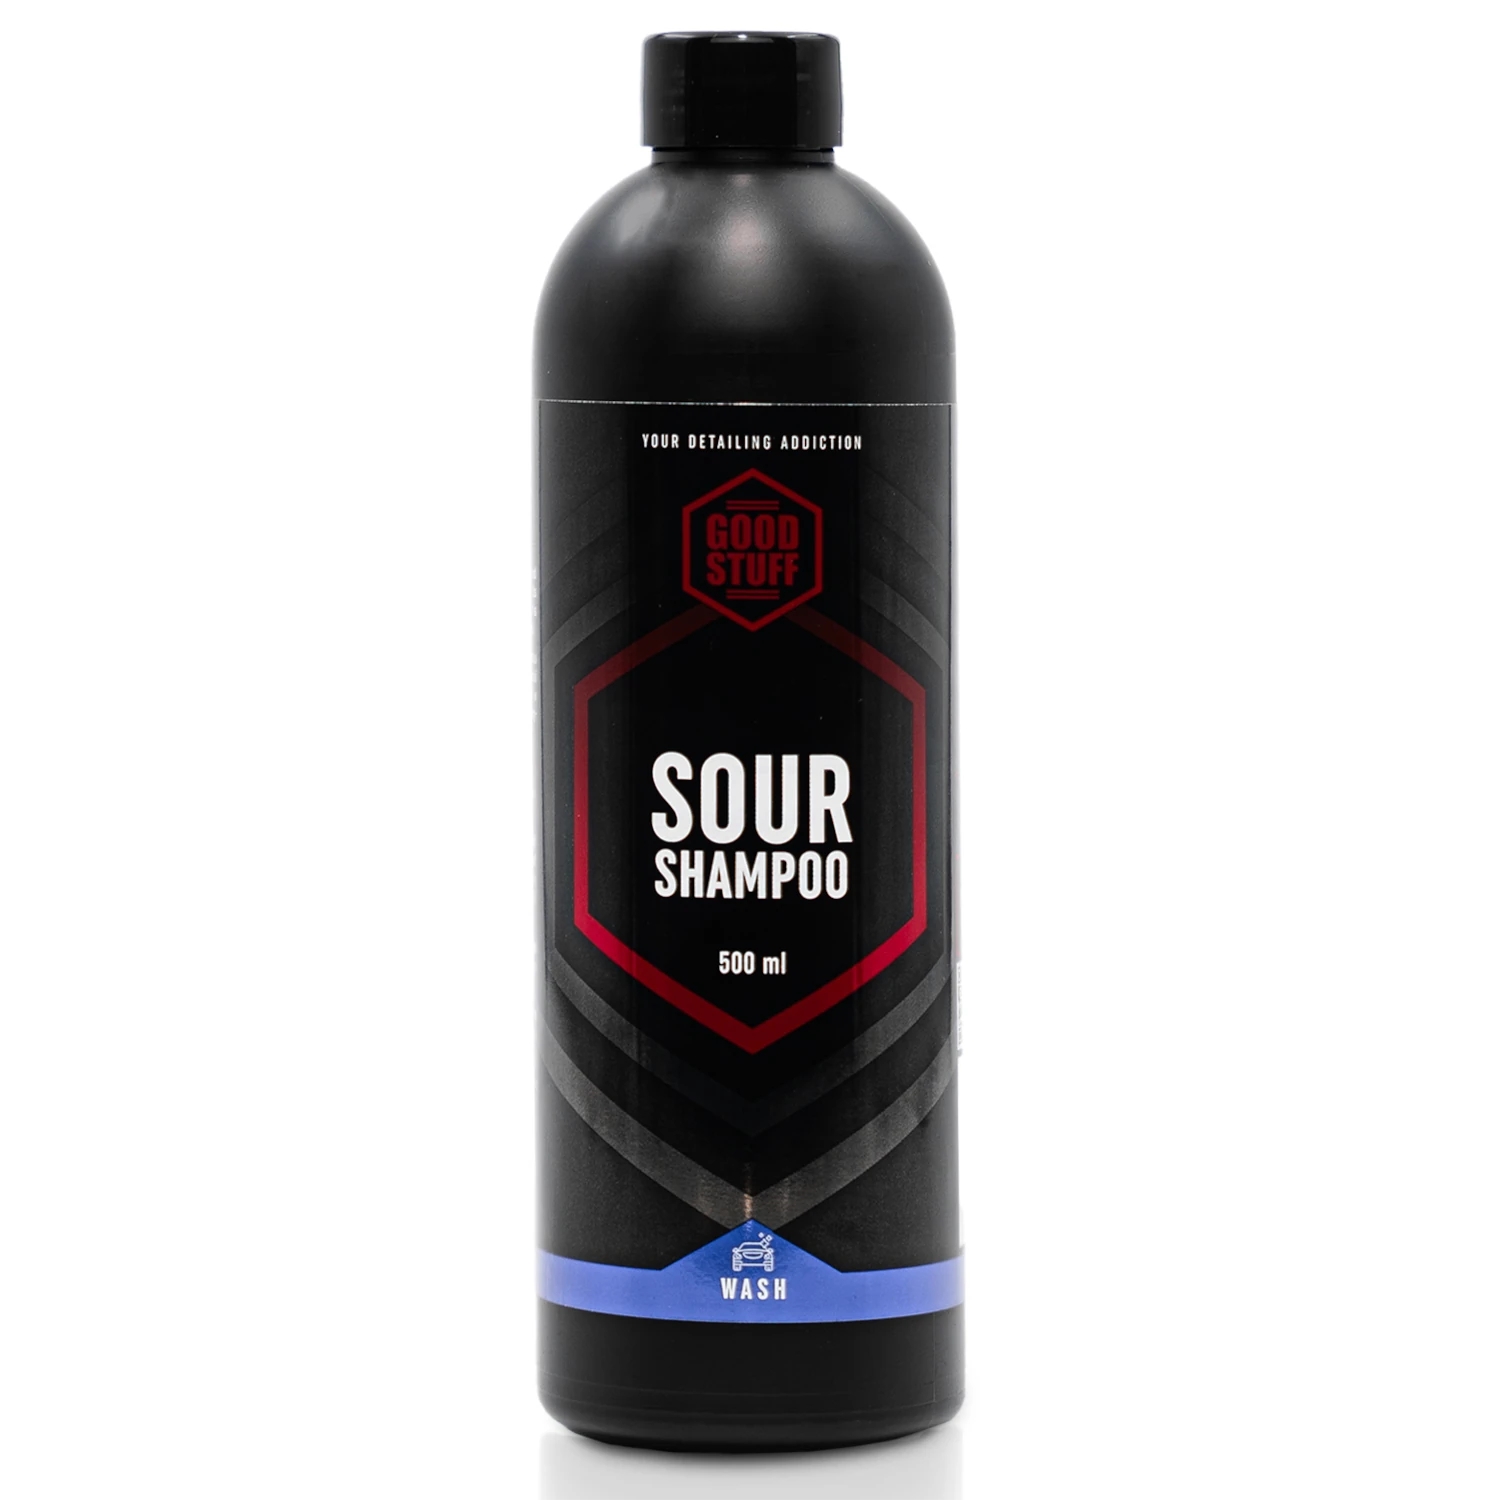 Image of Good Stuff Sour Shampoo – szampon samochodowy o kwaśnym pH, idealny do powłok 500ml